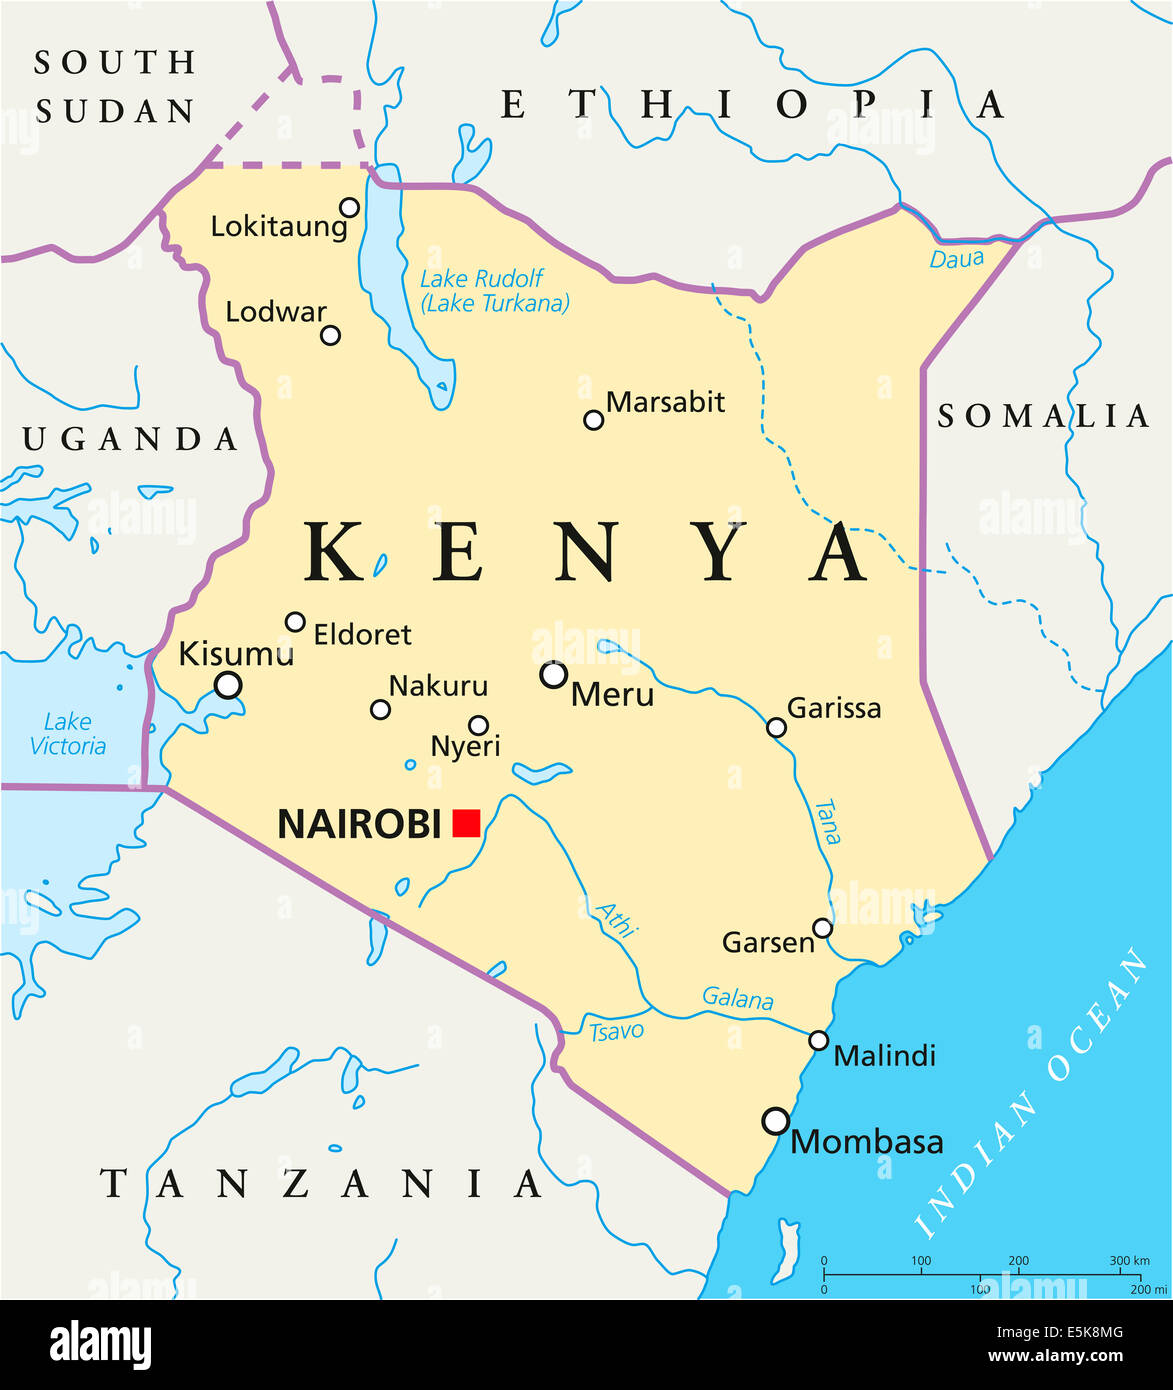 Kenia Politische Karte Mit Hauptstadt Nairobi Landesgrenzen Die Wichtigsten Stadte Flusse Und Seen Mit Englischer Beschriftung E5k8mg 